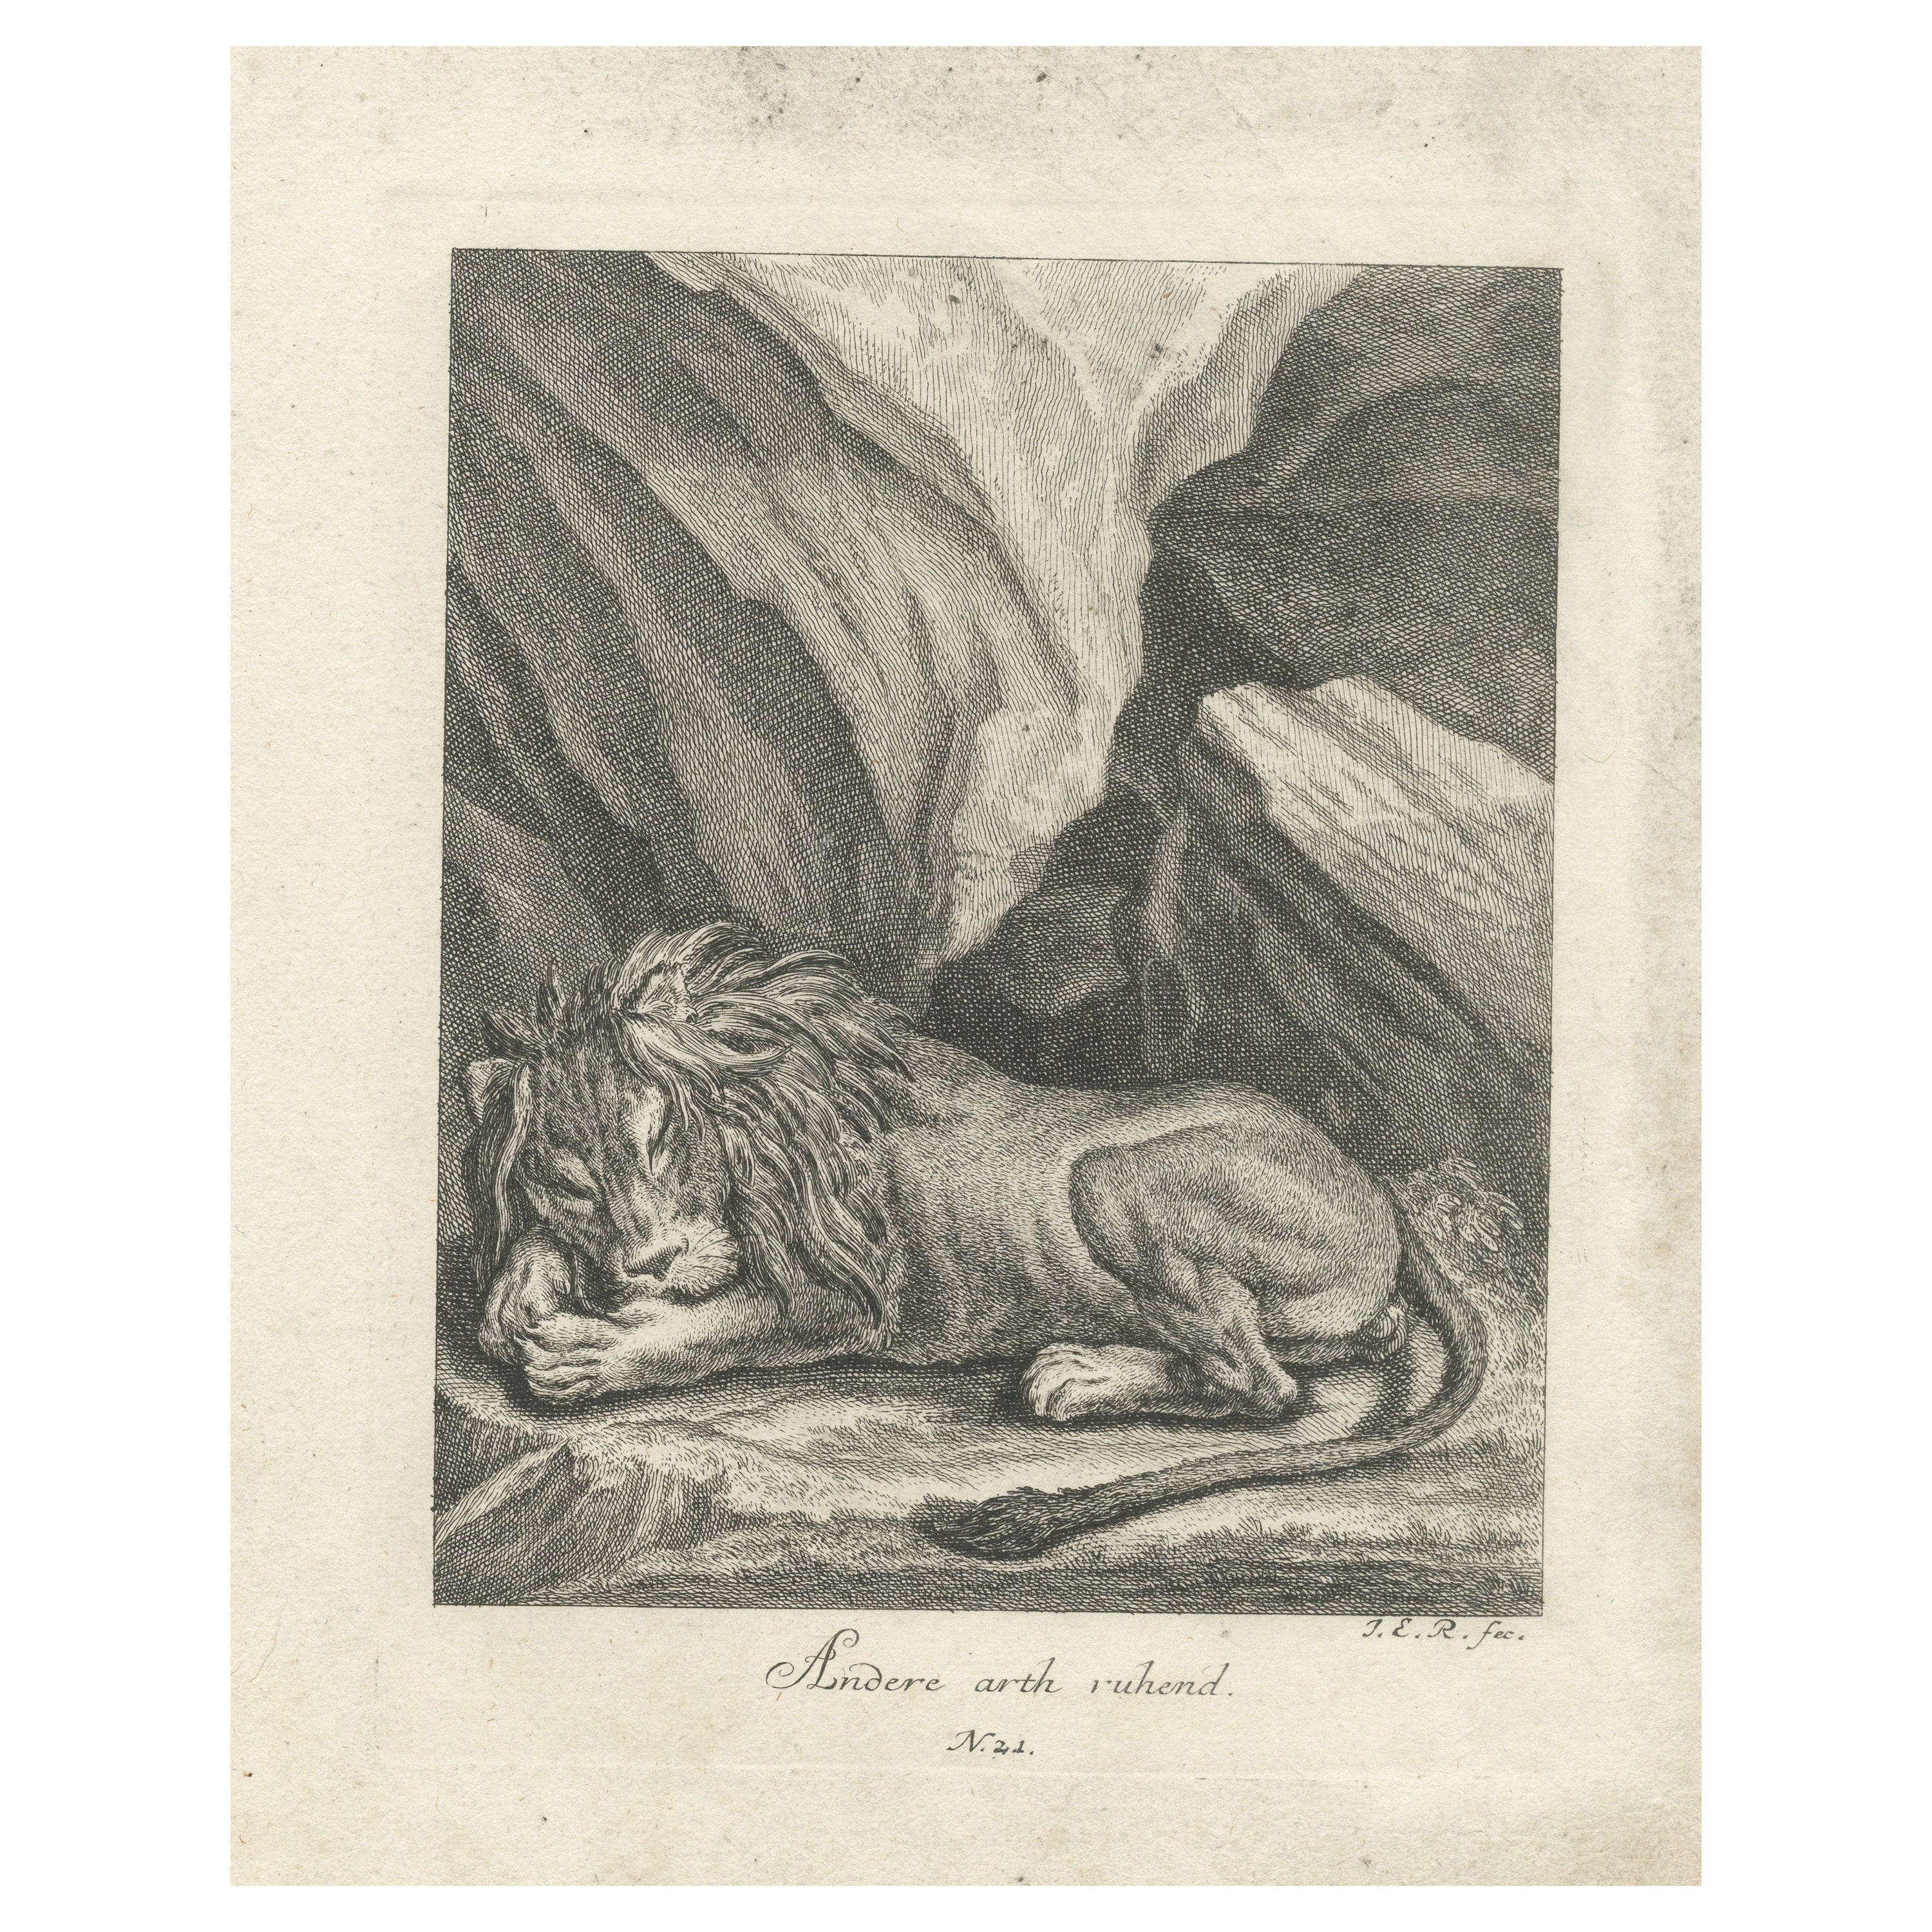 Impression ancienne d'un lion endormi dans un paysage montagneux